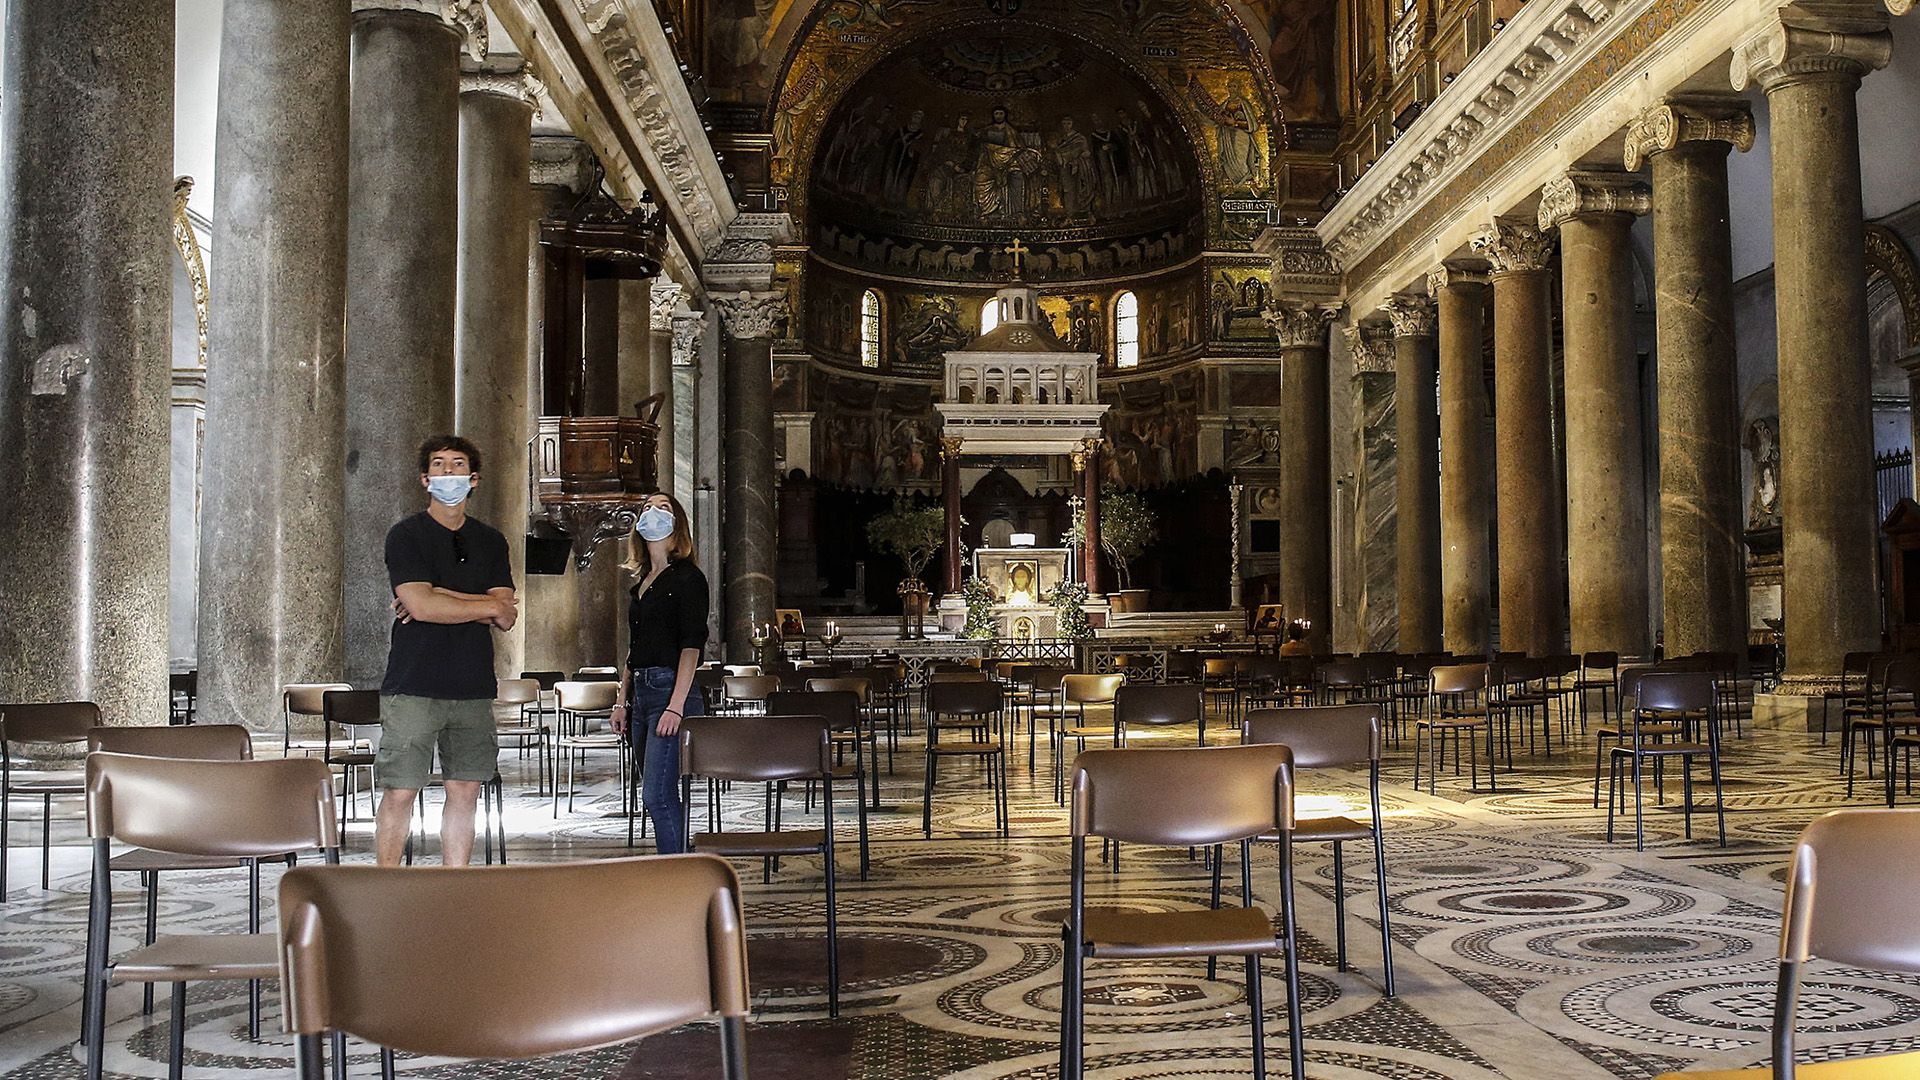 Egymástól biztonságos távolságra elhelyezett székek a Szent Mária-bazilikában